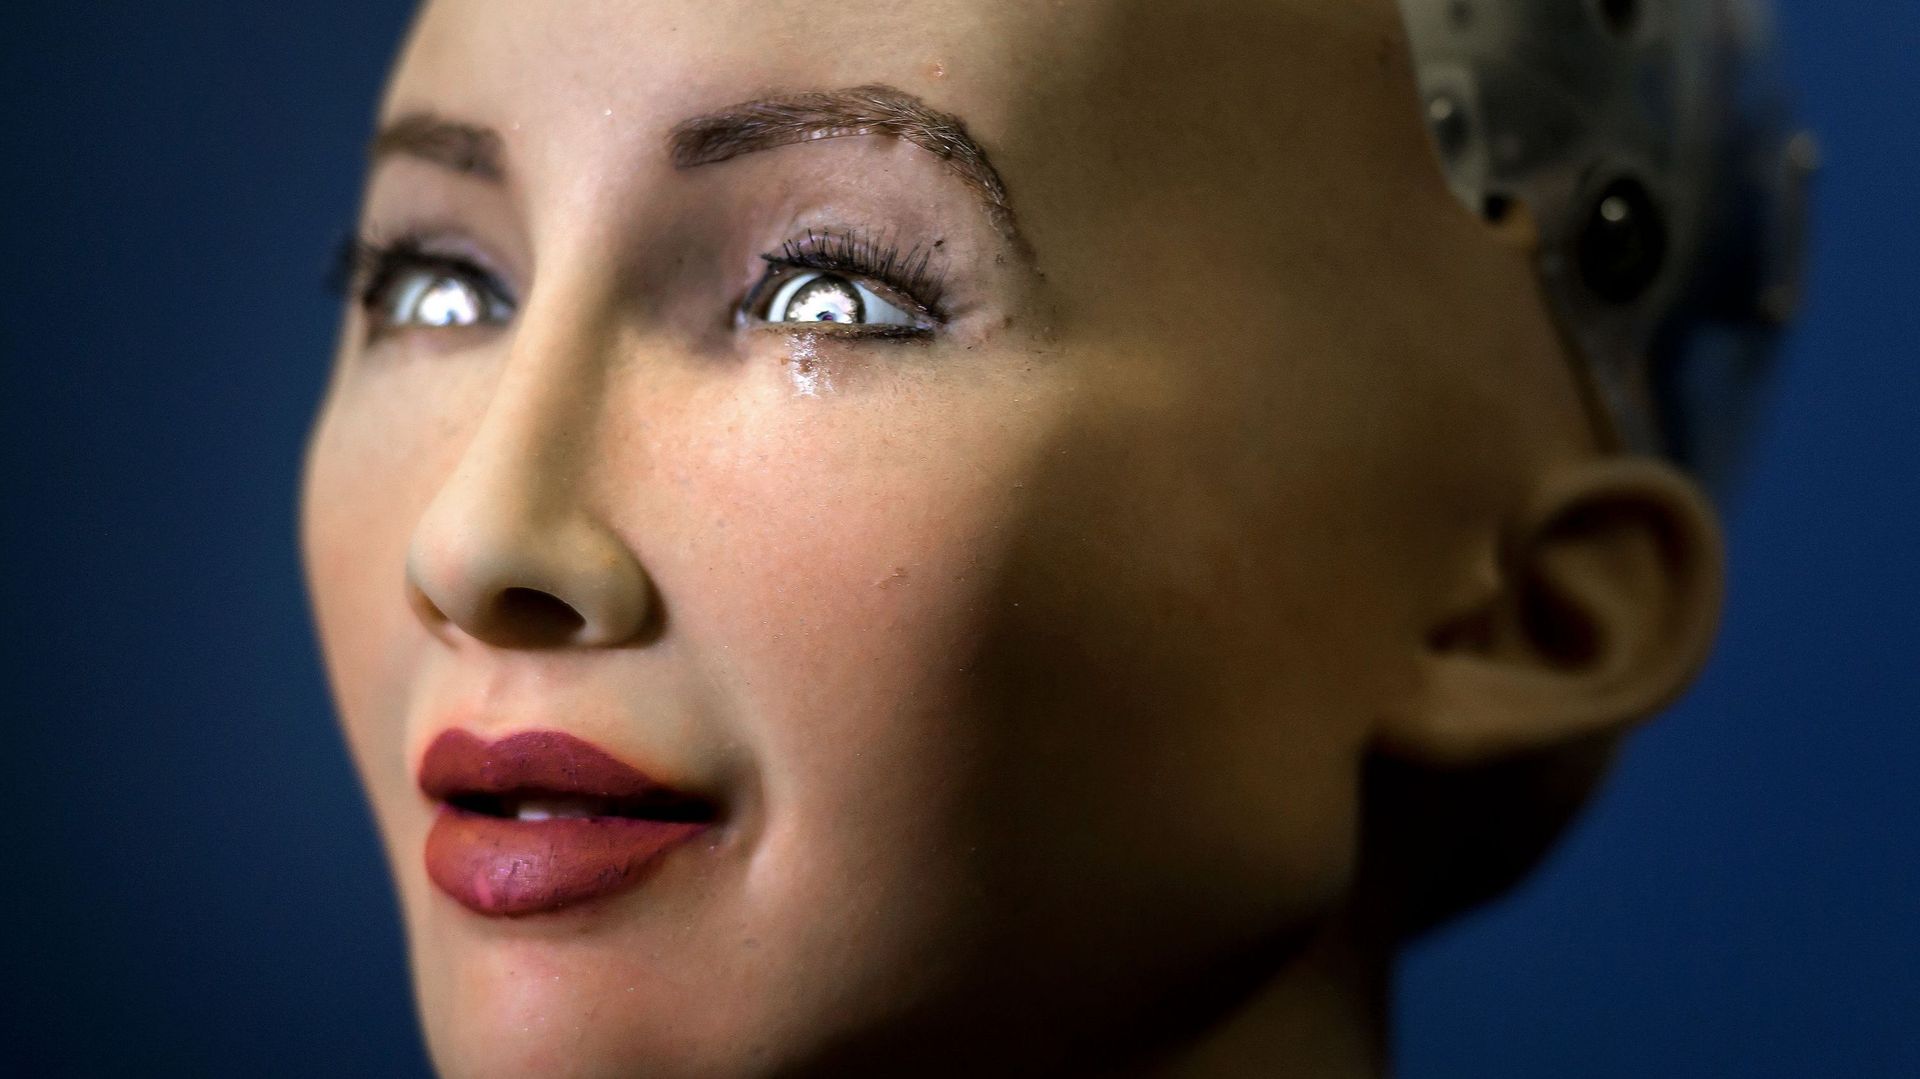 des robots logiciels dialogueront avec les contribuables sous forme de conversations automatisées intelligentes. Mais rassurez-vous, les E-fonctionnaires n'auront pas ce visage-là. Ce seront de simple logiciels.